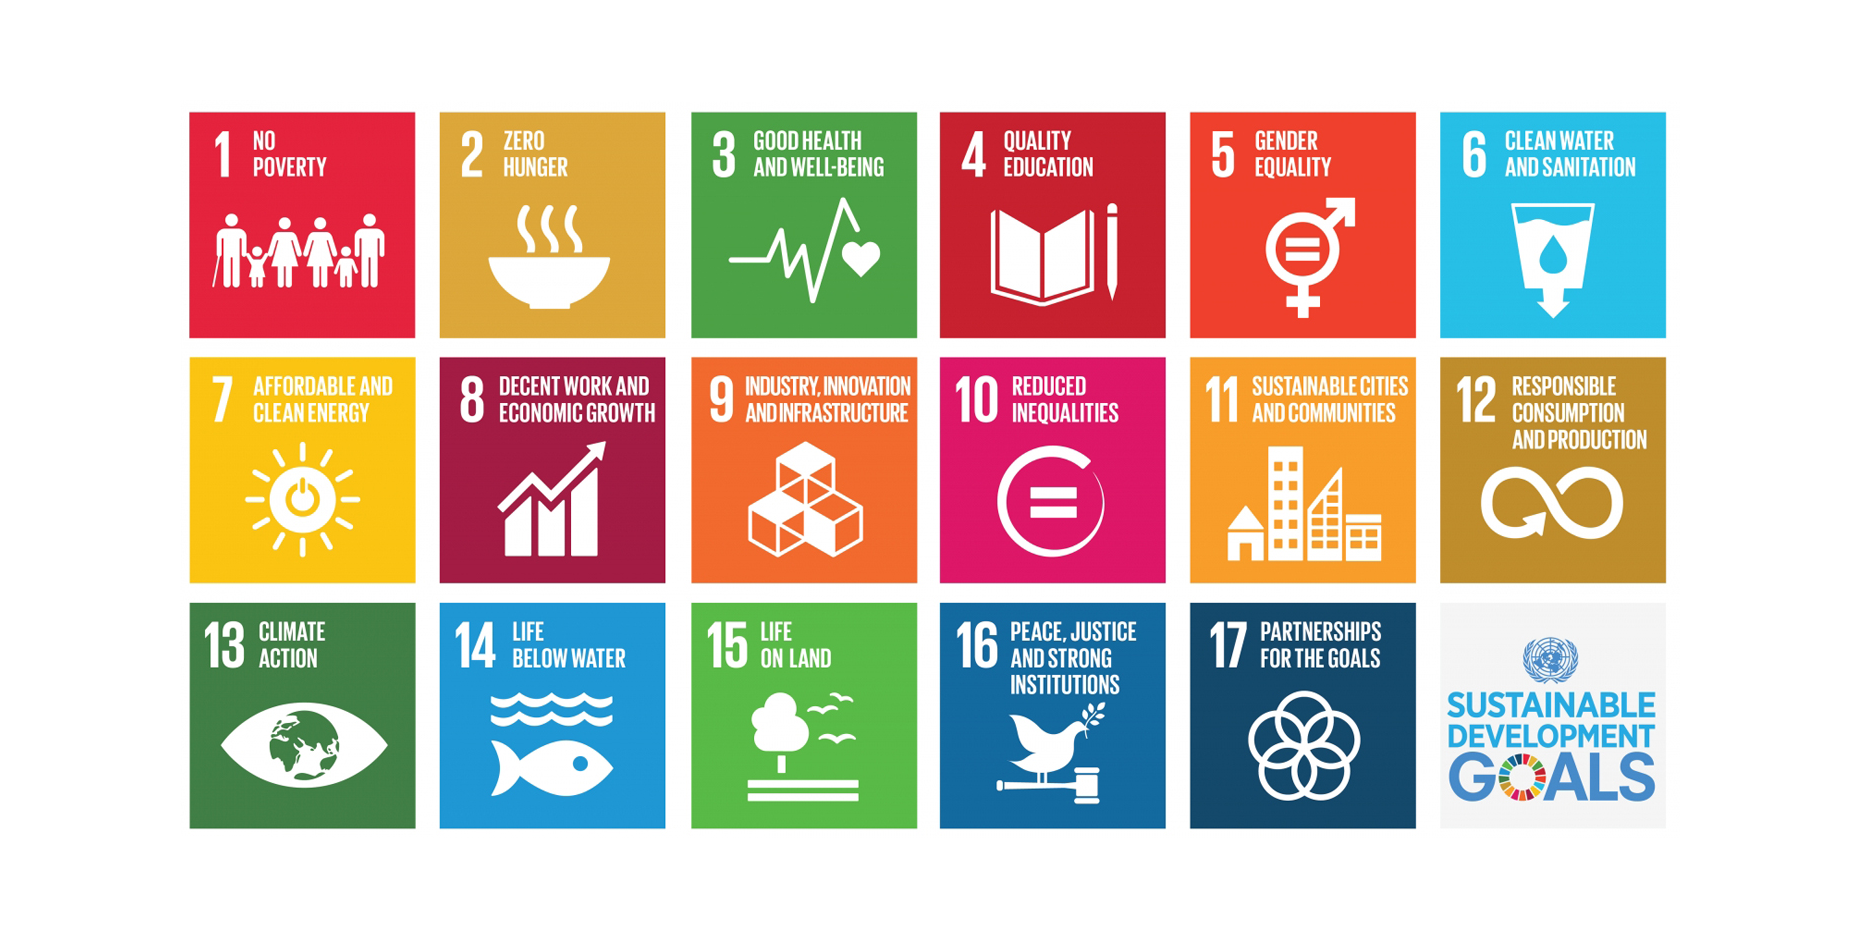 Klik op de afbeelding om alle 17 Sustainable Development Goals van de Verenigde Naties te zien